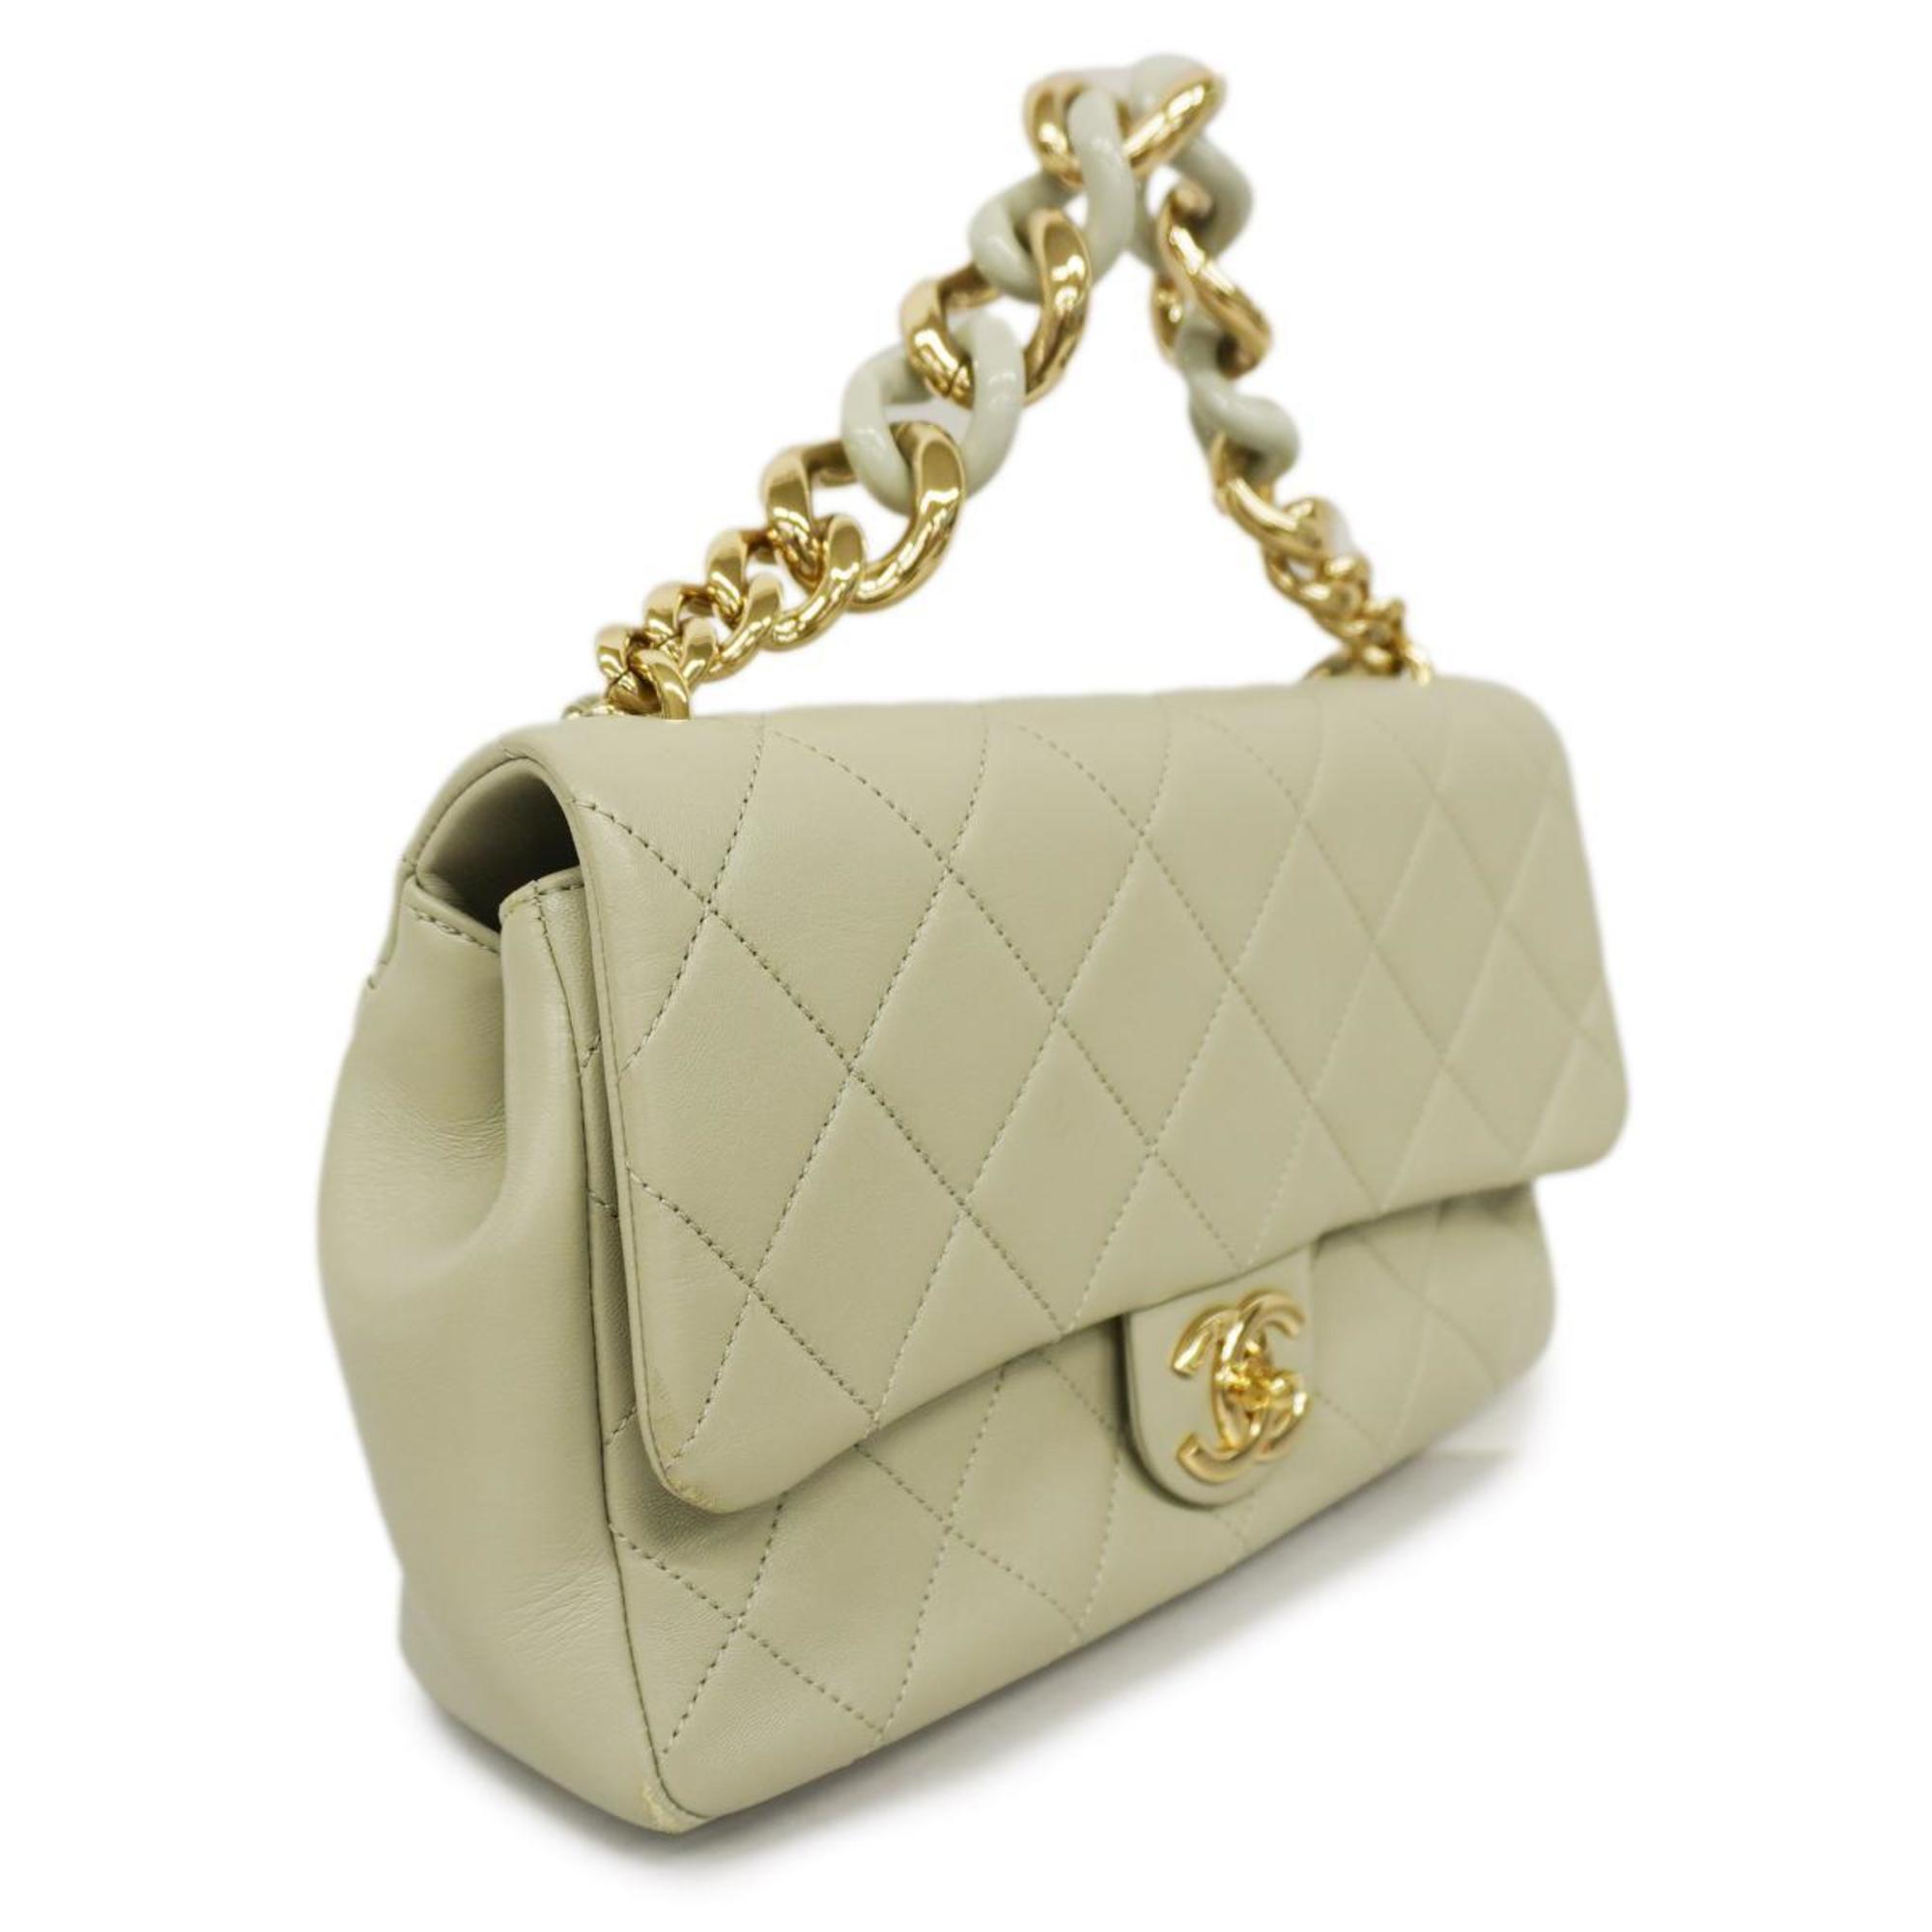 Chanel Handbag Matelasse Chain Shoulder Lambskin Light Gray Champagne Women's